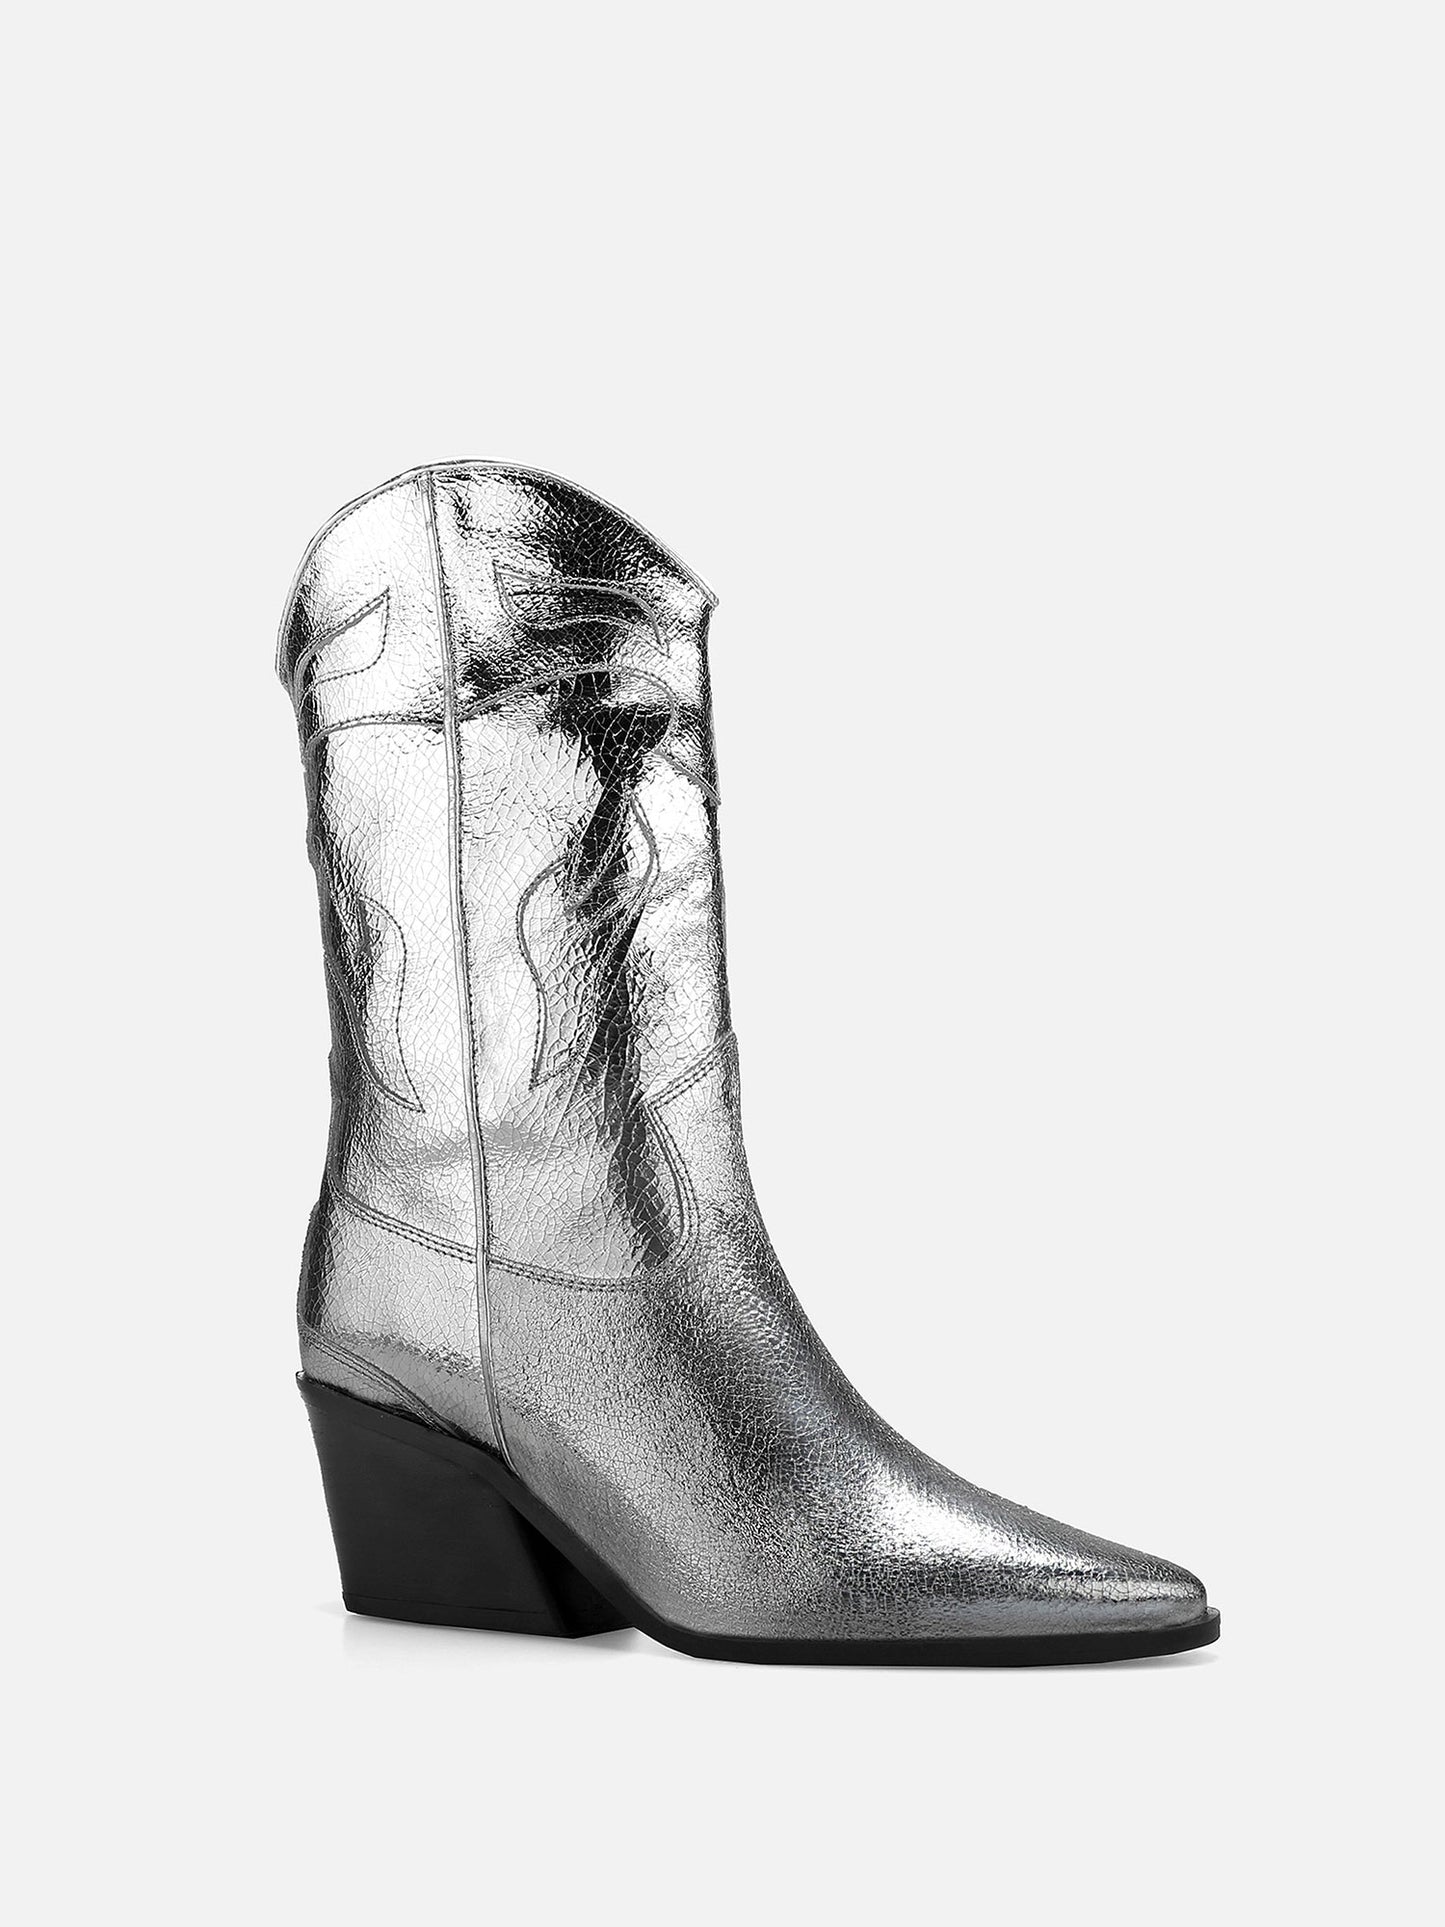 CARINA CALDEIRA X ESC High Leather Cowboy Boots - Silver